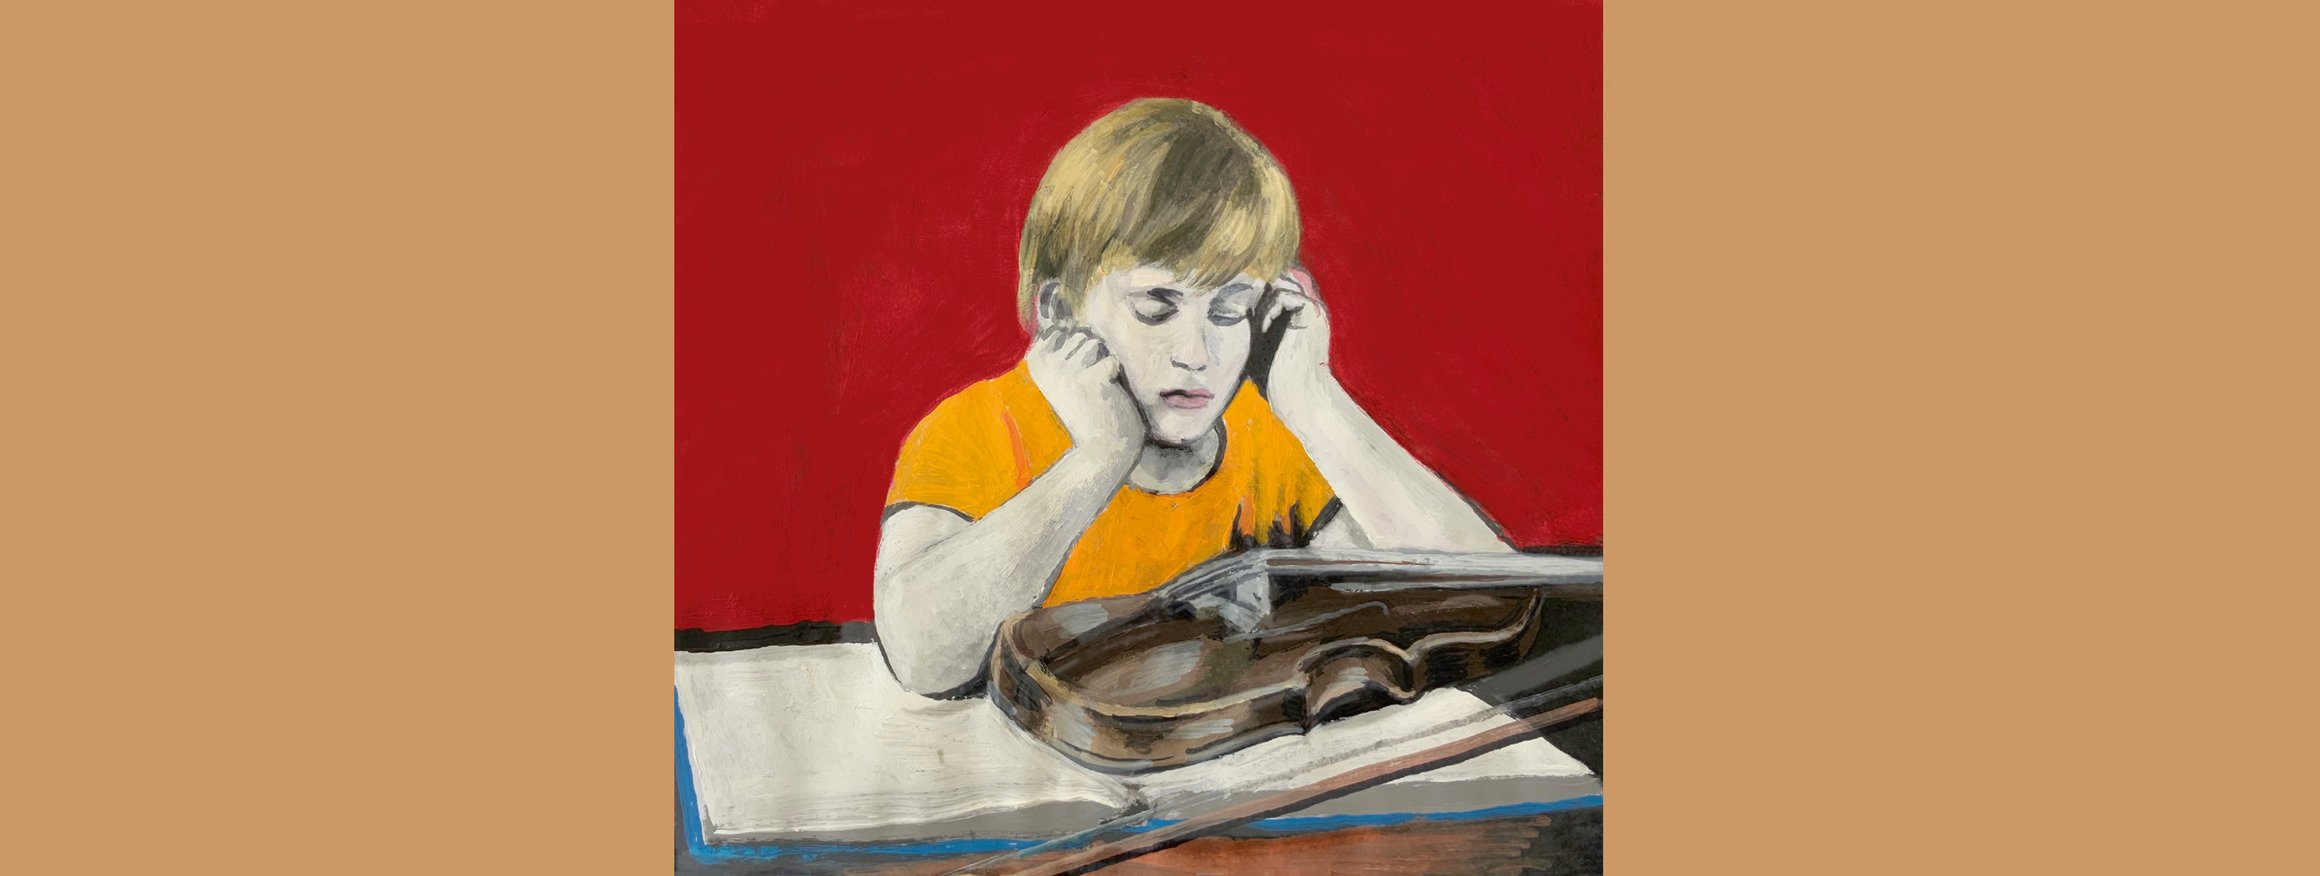 Die Illustration zeigt ein Kind, dass mit einer Geige vor einem Buch sitzt, die Hände auf den Kopf gestützt